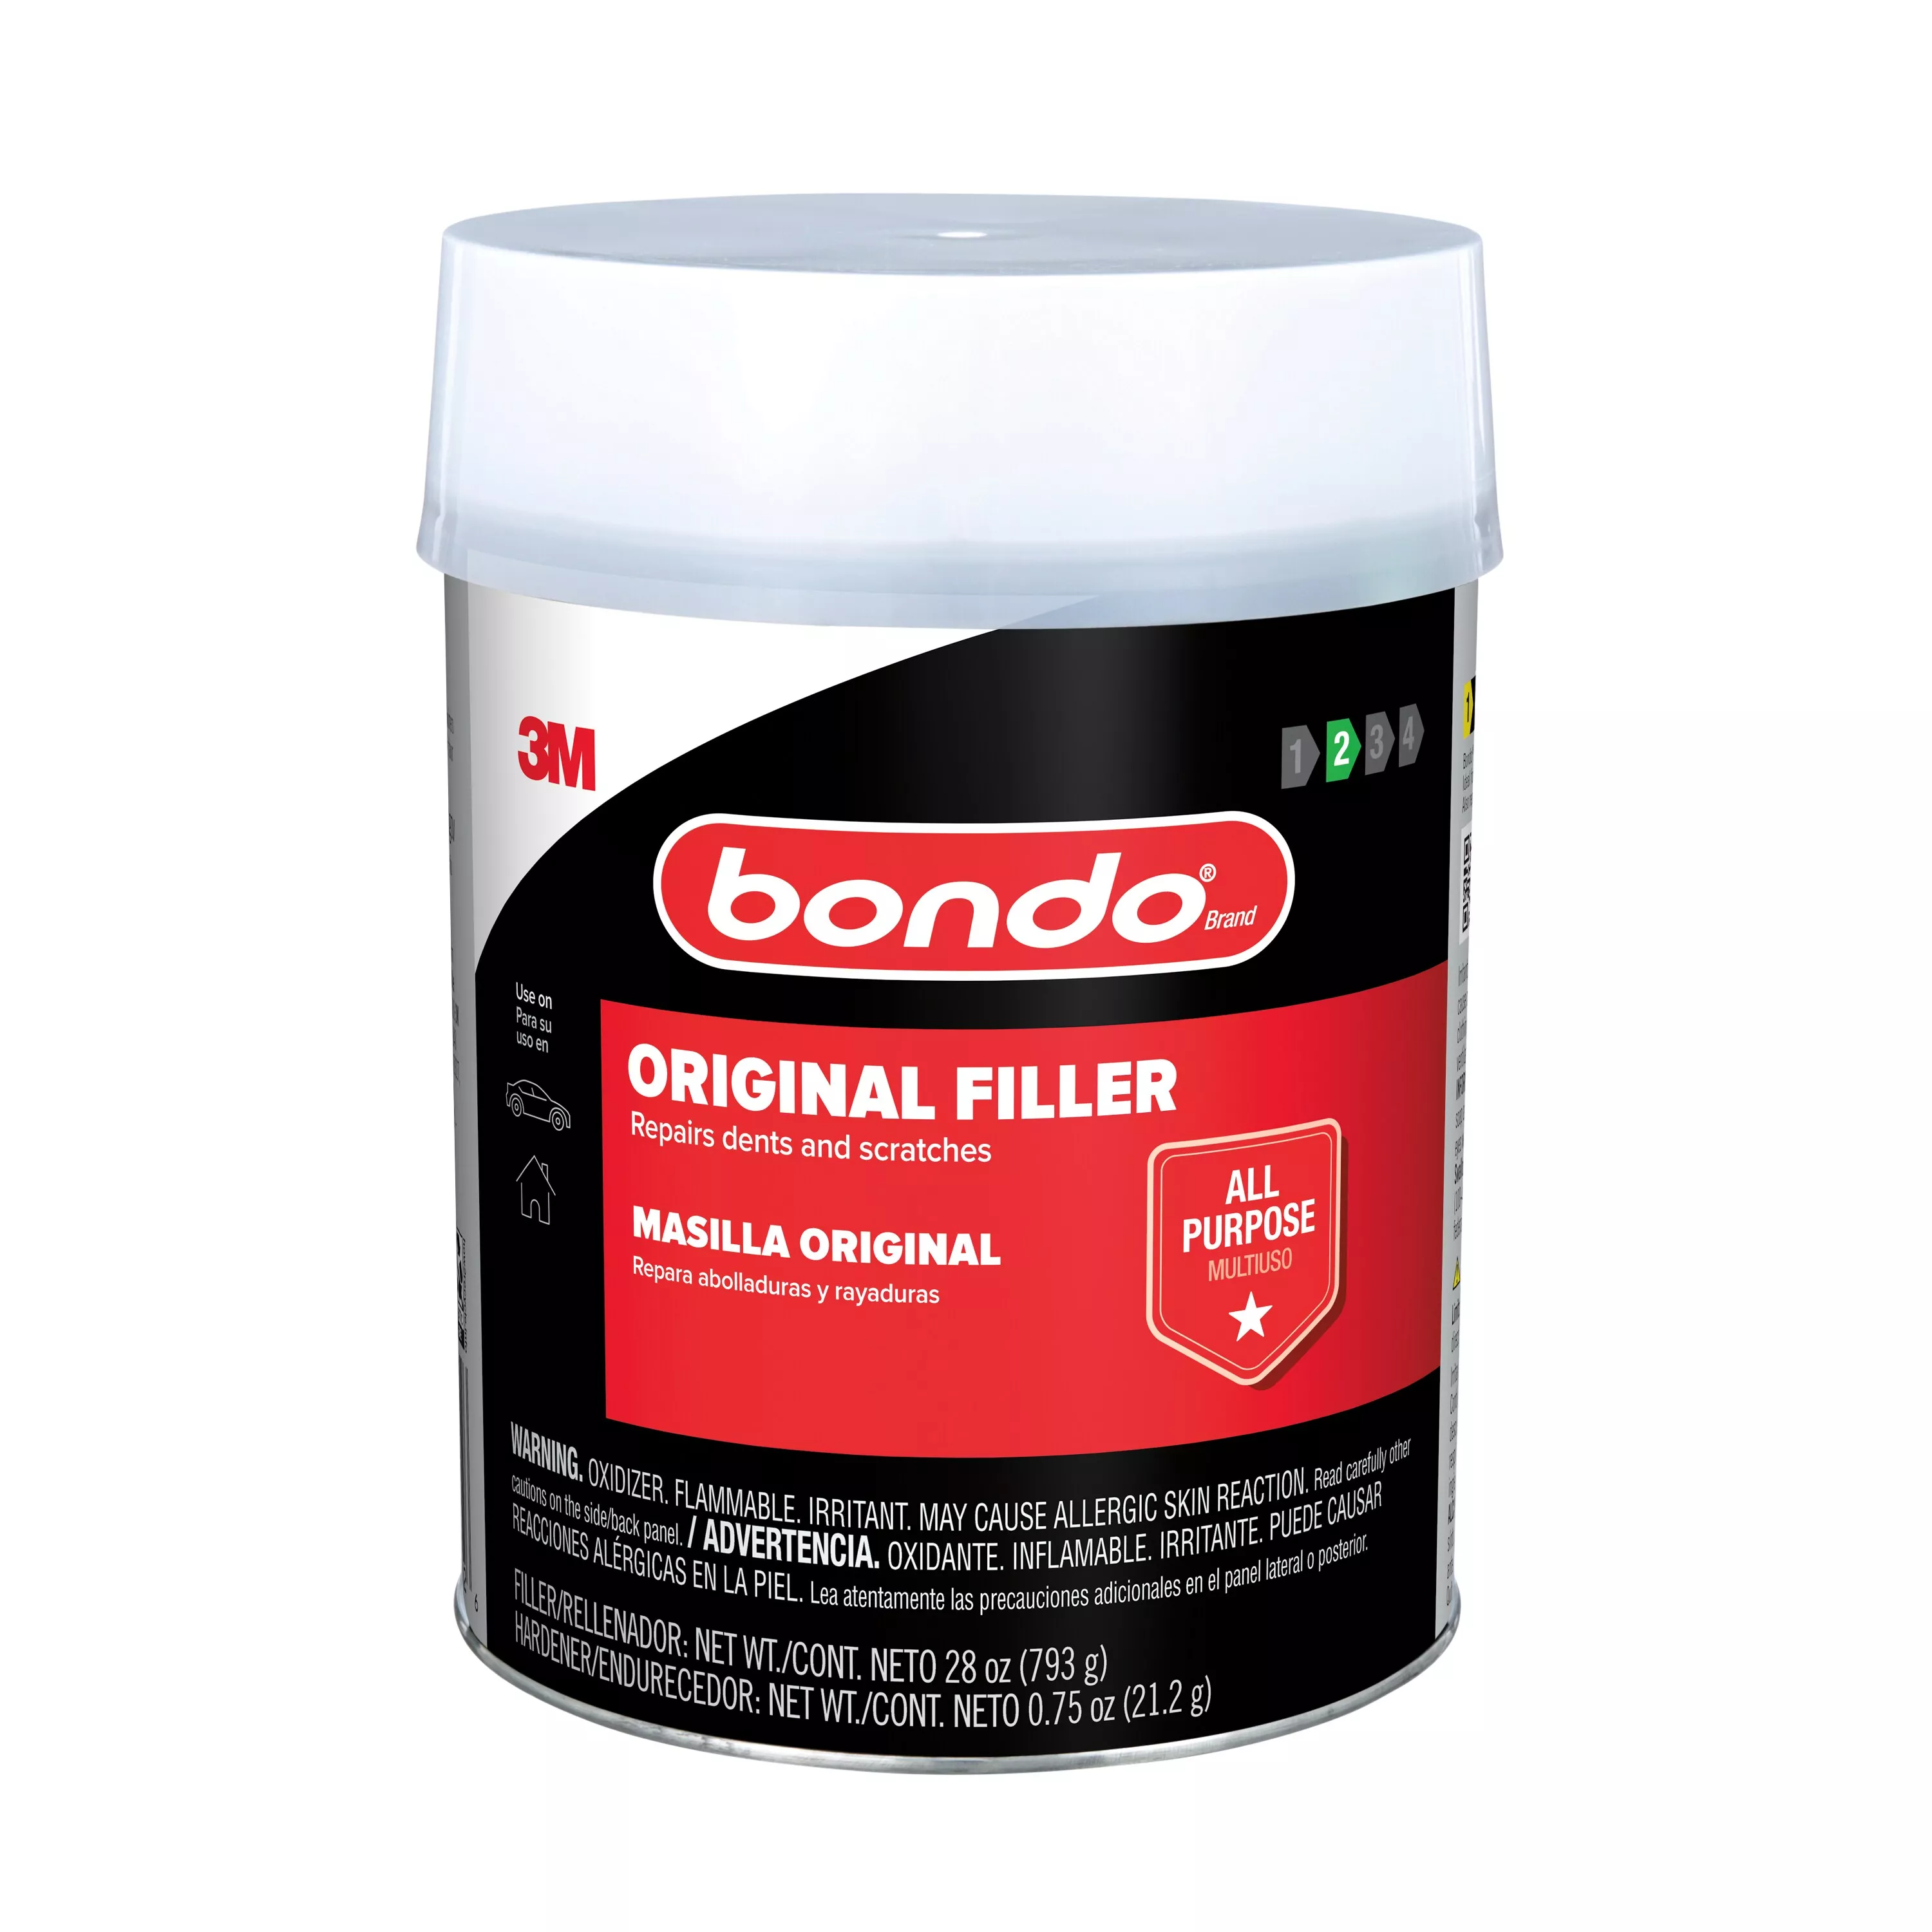 Bondo® Original Filler, OR-QT-ES, 28 oz (793.78 g), 6 per case